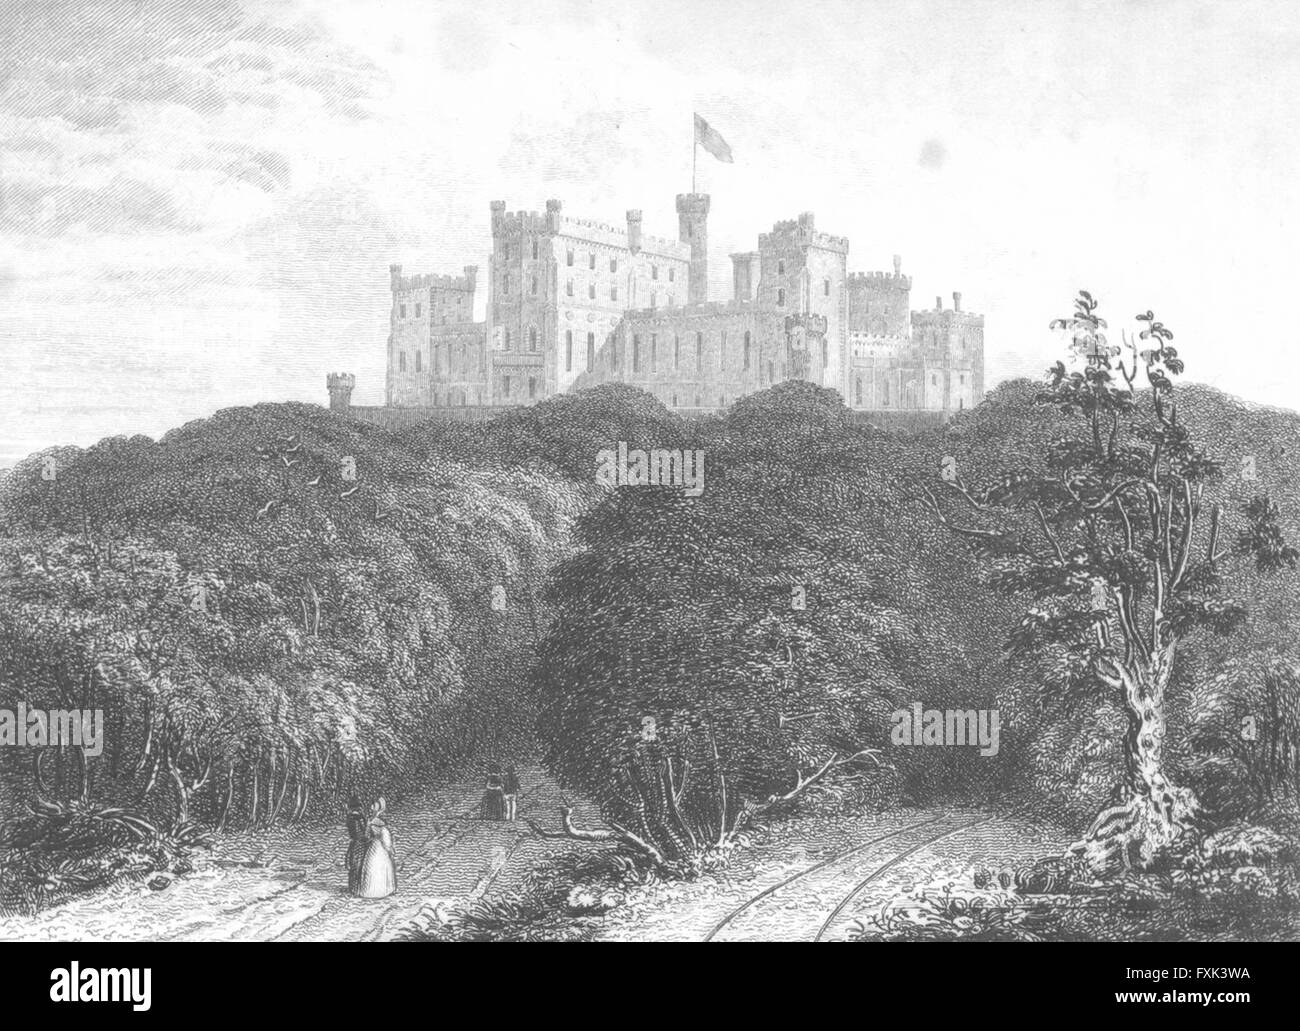 LEICS: Castillo de Belvoir: Saunders, antiguos bosques imprimir 1836 Foto de stock